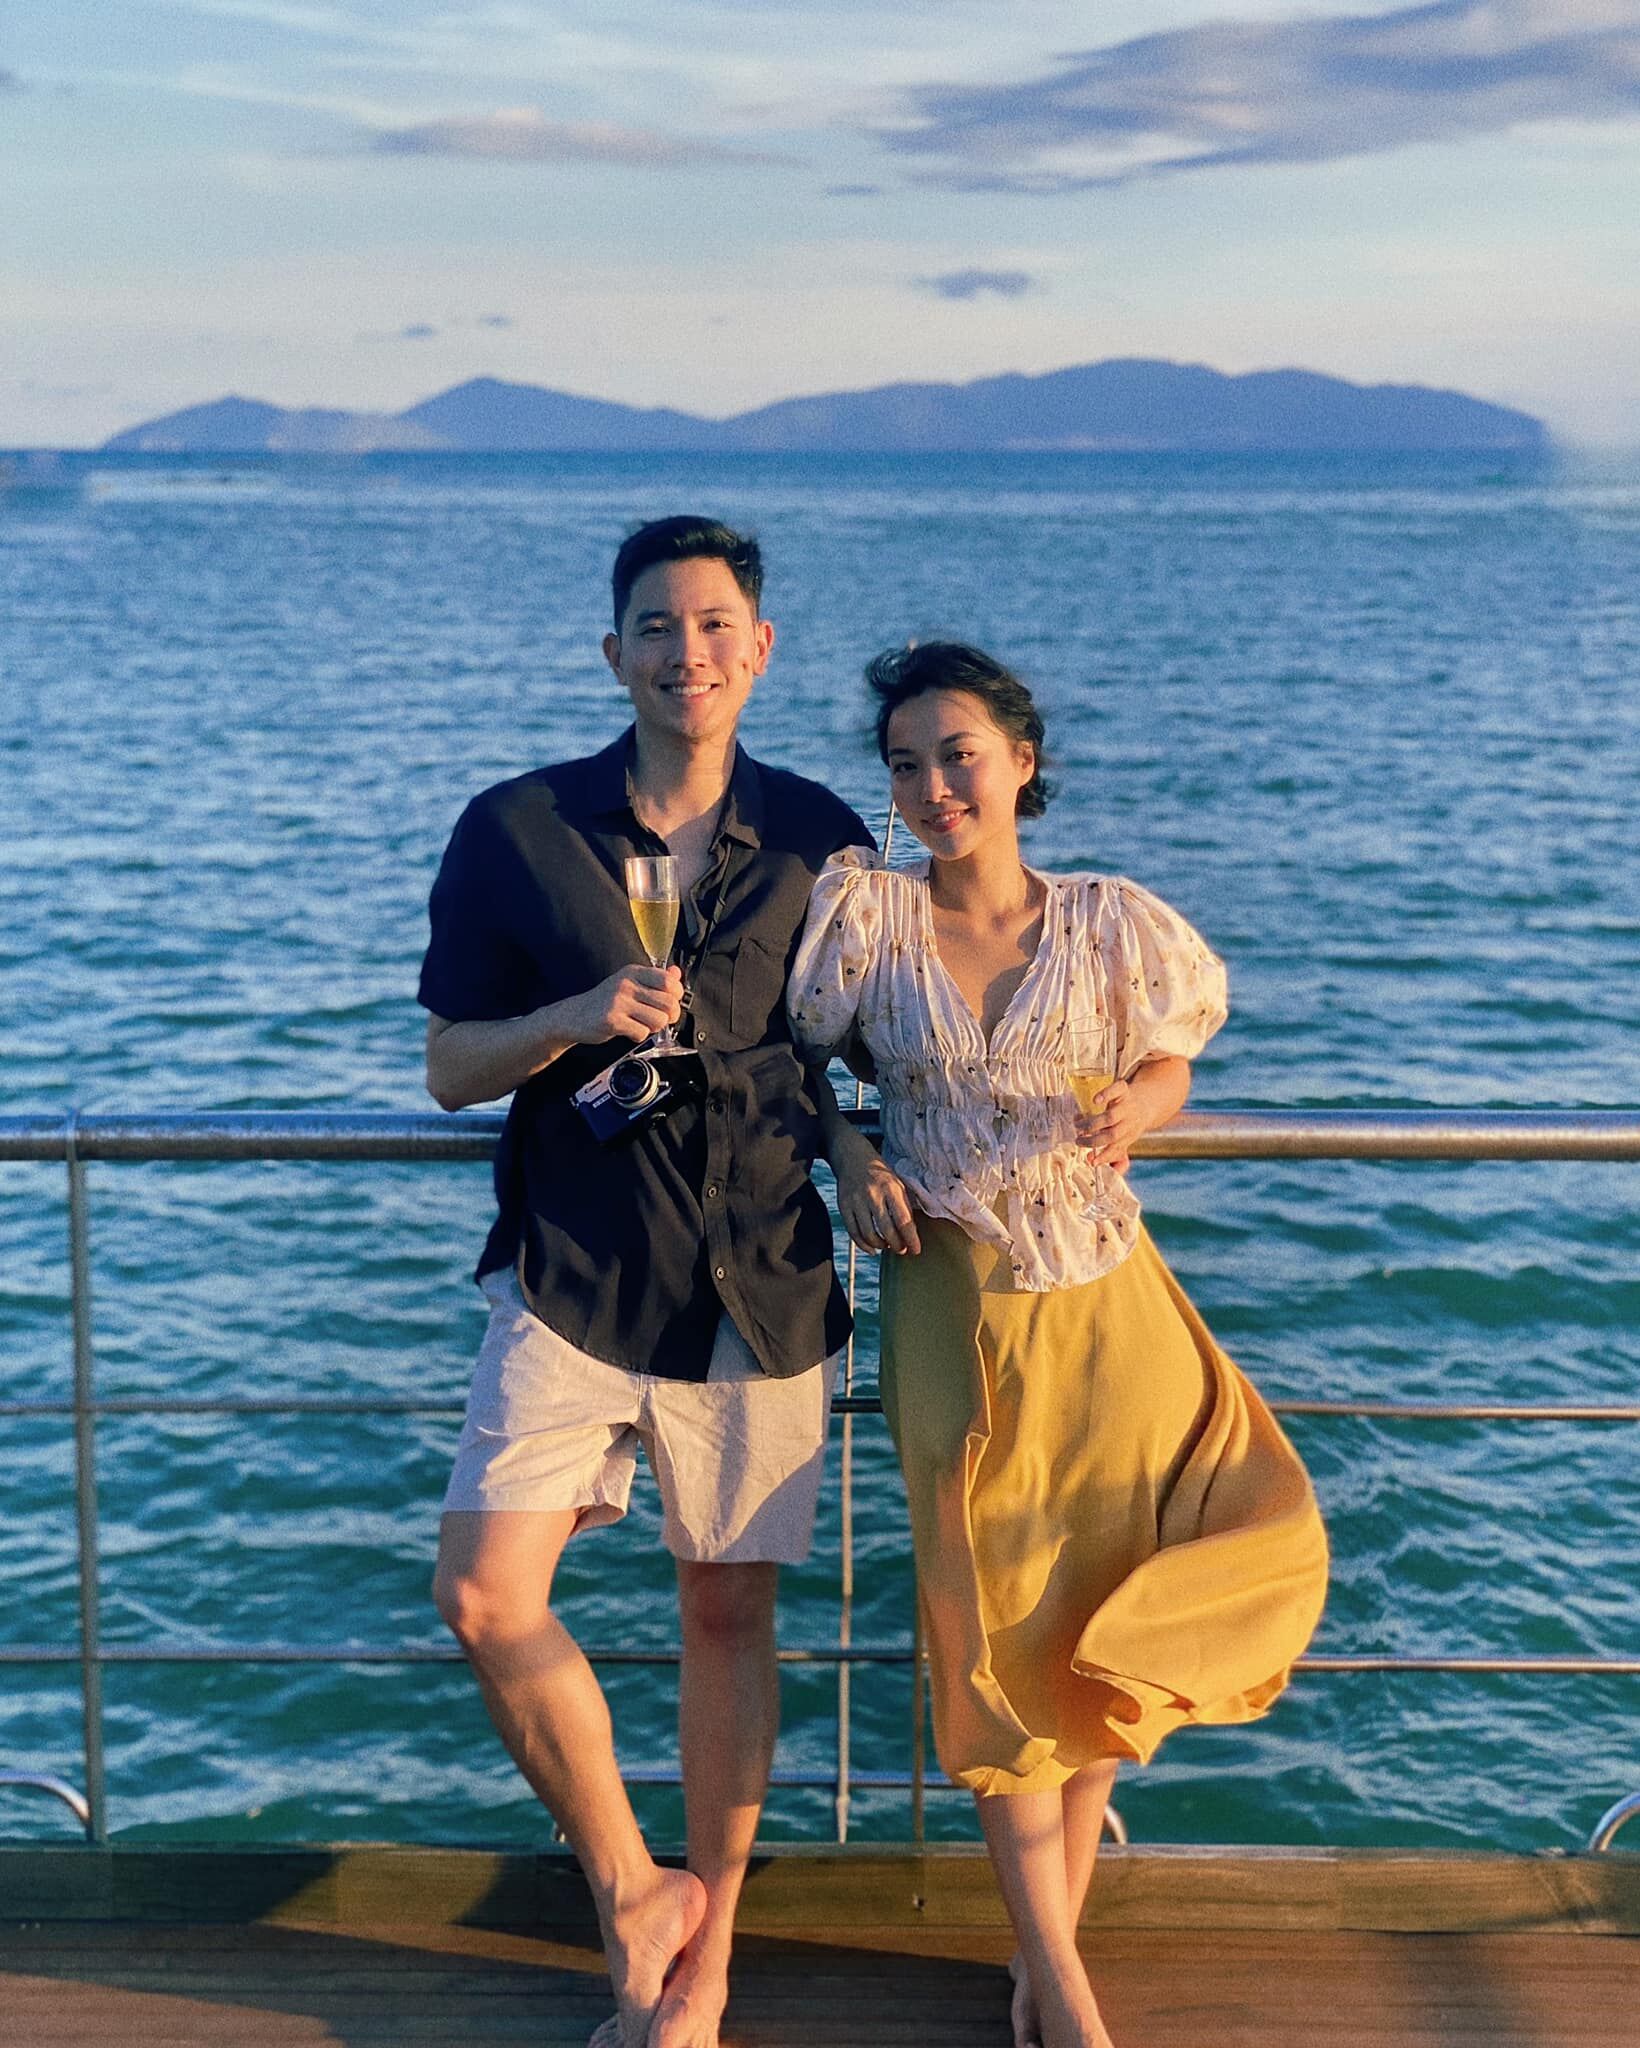 Tài khoản Instagram các cặp đôi nên theo dõi để tăng cảm hứng du lịch-7